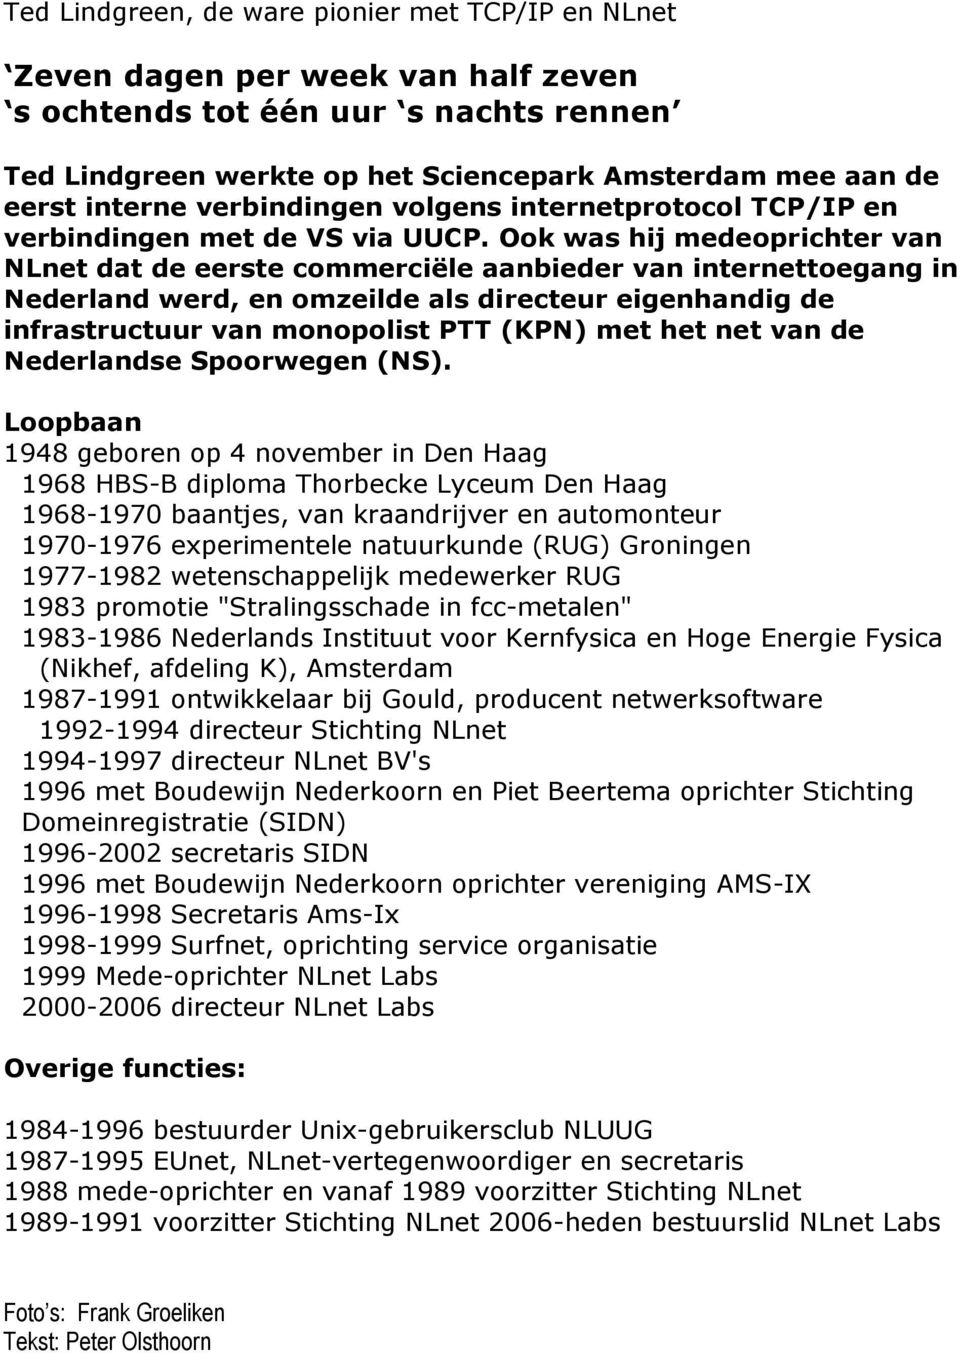 Ook was hij medeoprichter van NLnet dat de eerste commerciële aanbieder van internettoegang in Nederland werd, en omzeilde als directeur eigenhandig de infrastructuur van monopolist PTT (KPN) met het